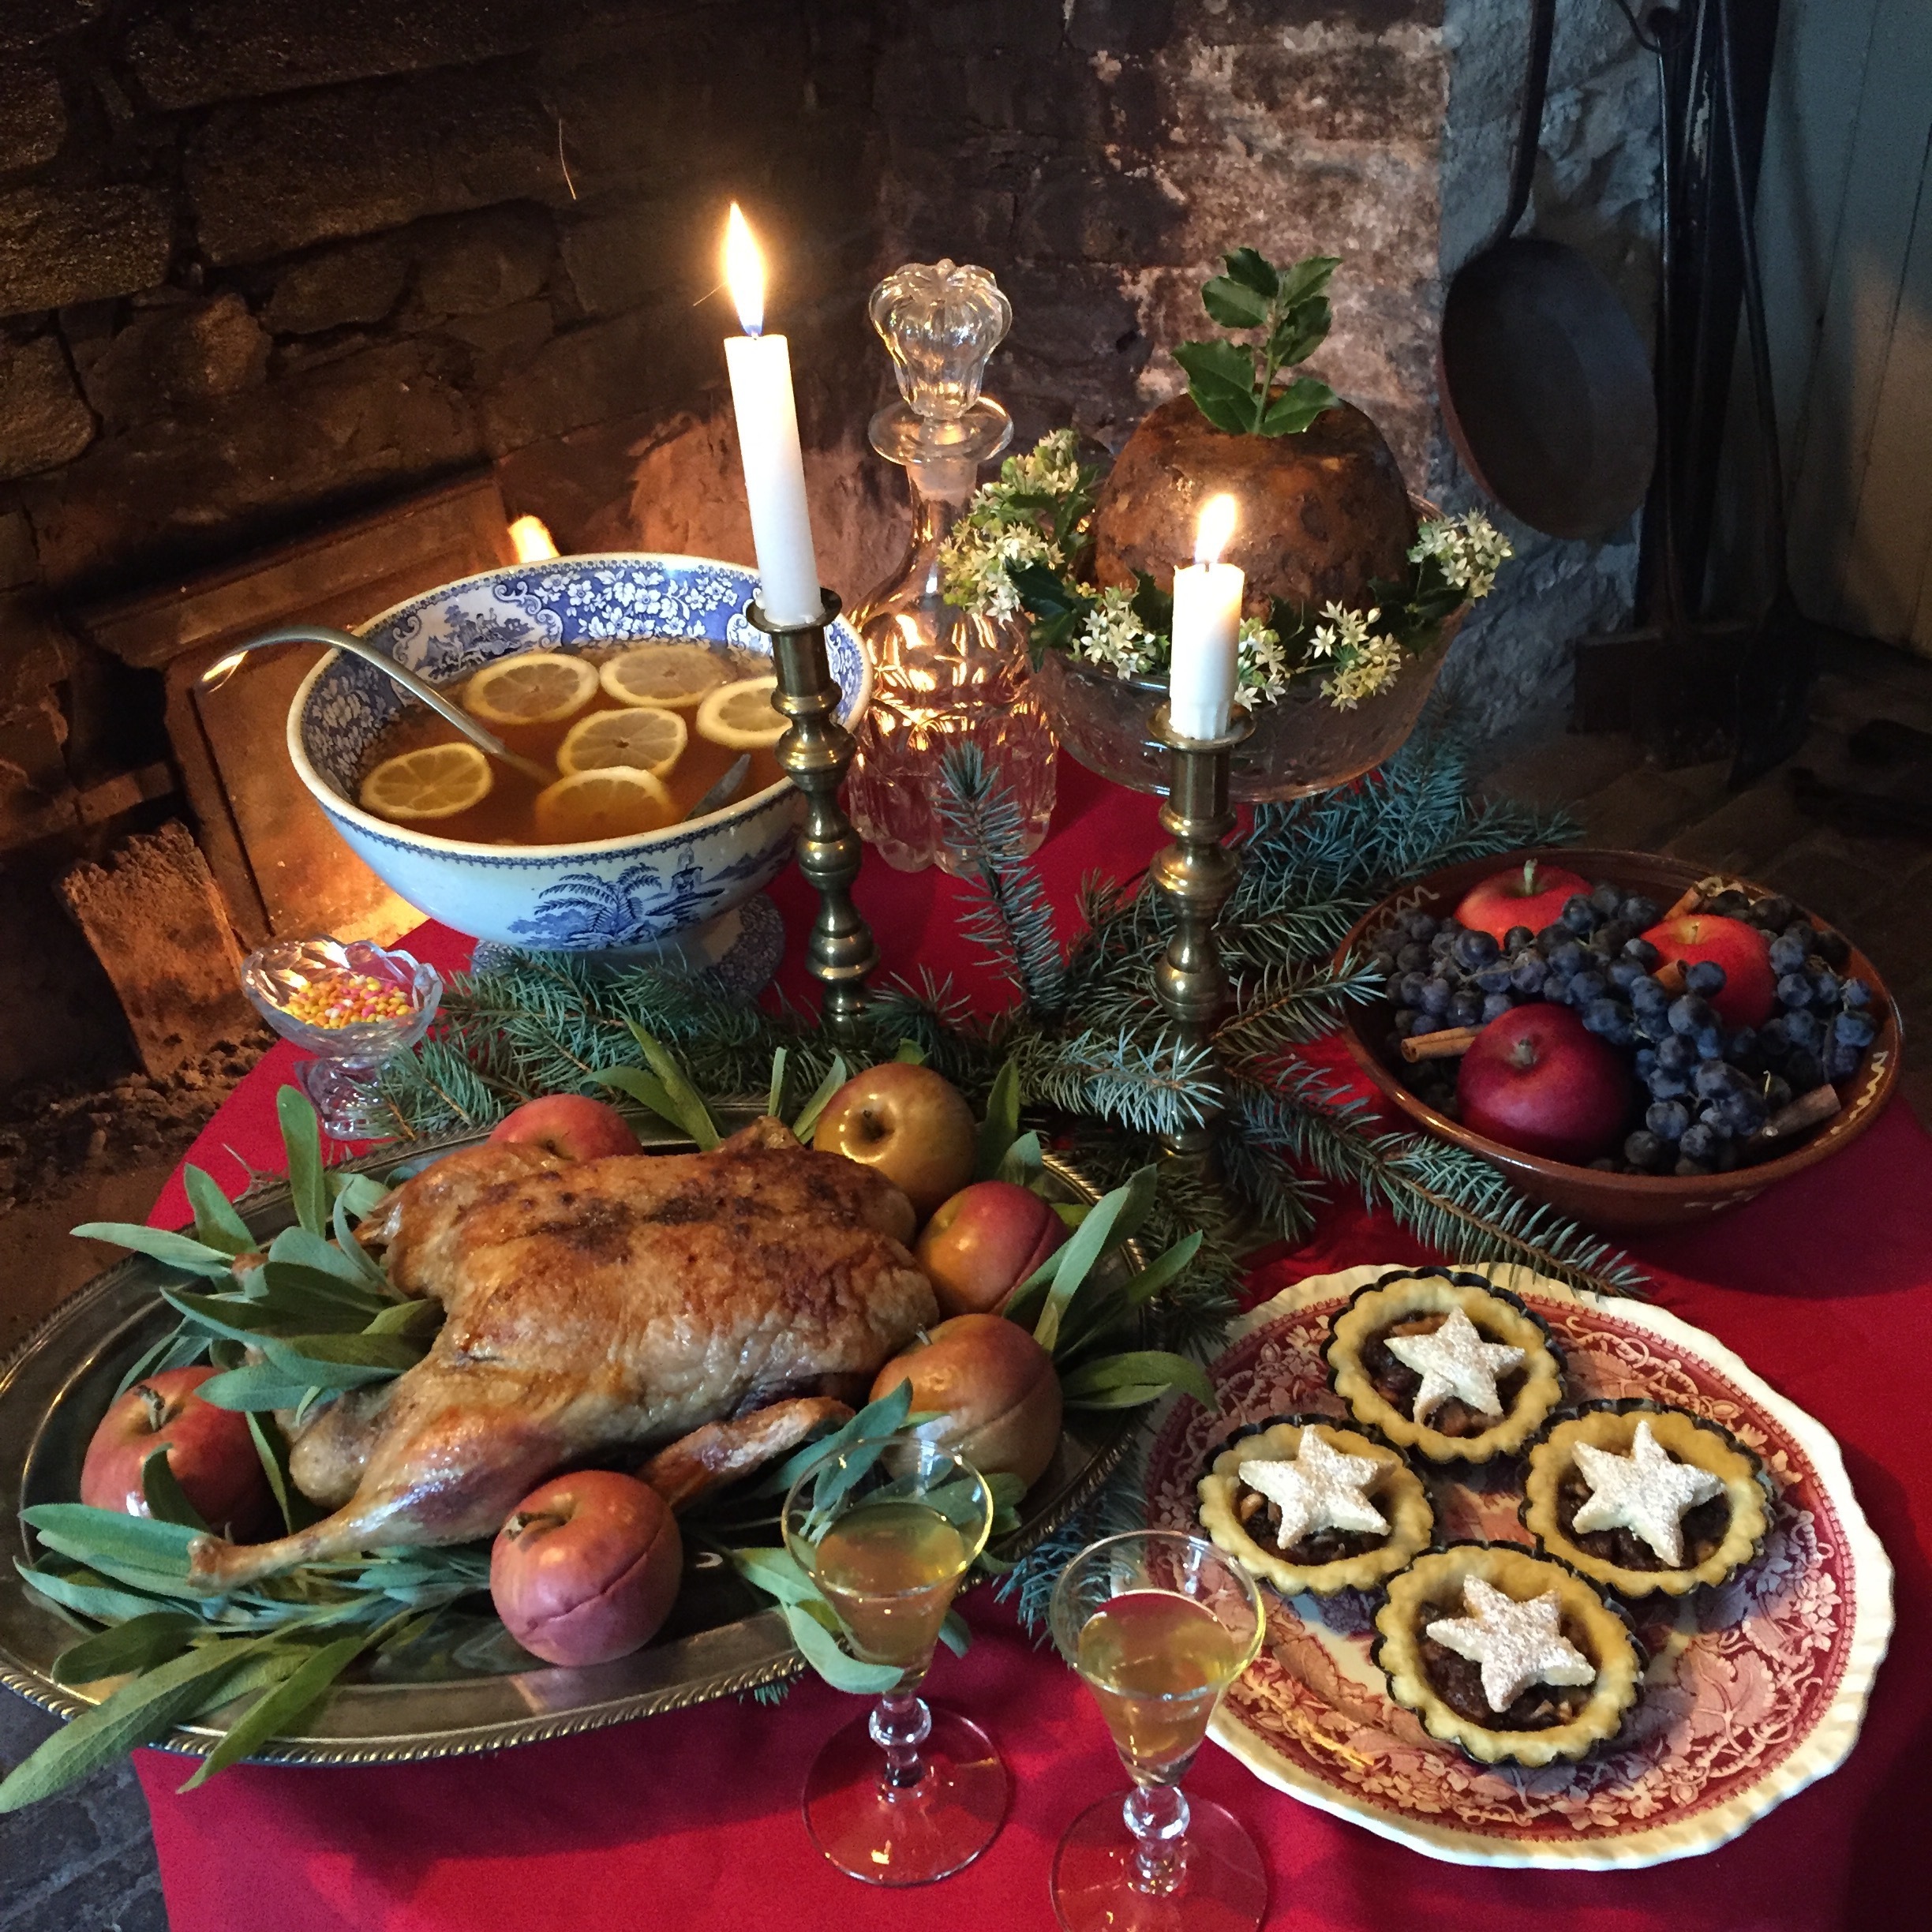 Traditional Christmas feast, turkey, mincemeat tarts, apple cider